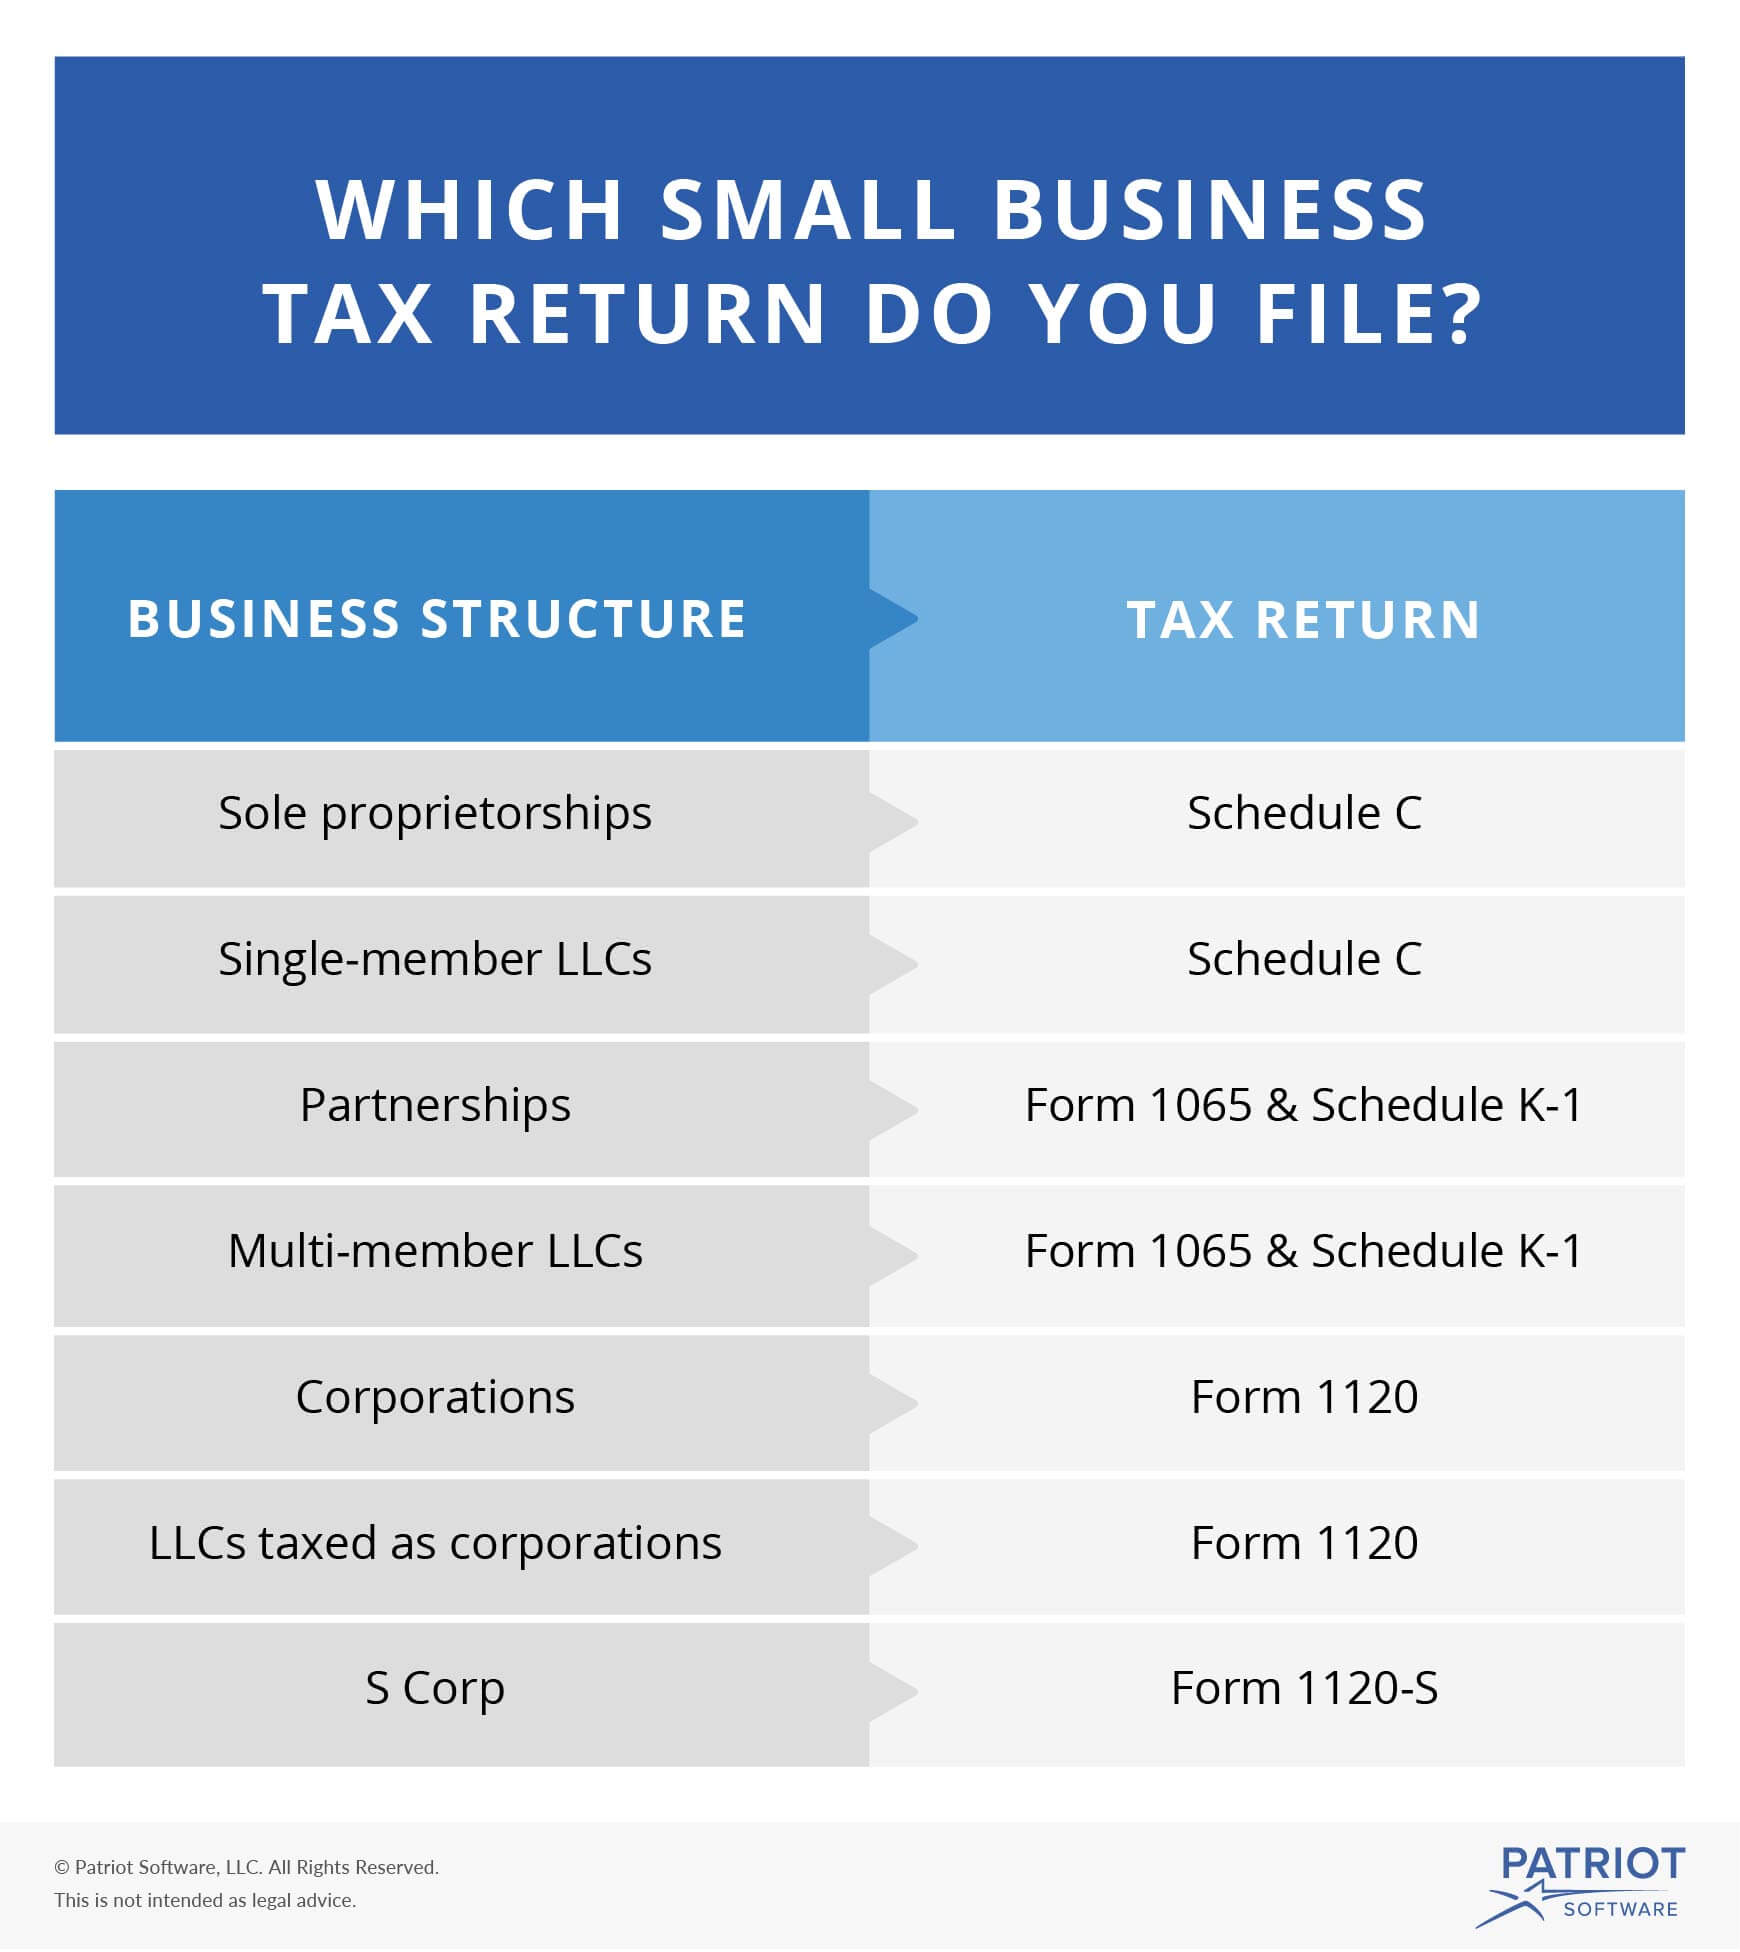 Diagramm mit der nach Unternehmensstruktur einzureichenden Steuererklärung als Teil der Checkliste zur Vorbereitung der Steuererklärung für Kleinunternehmen 